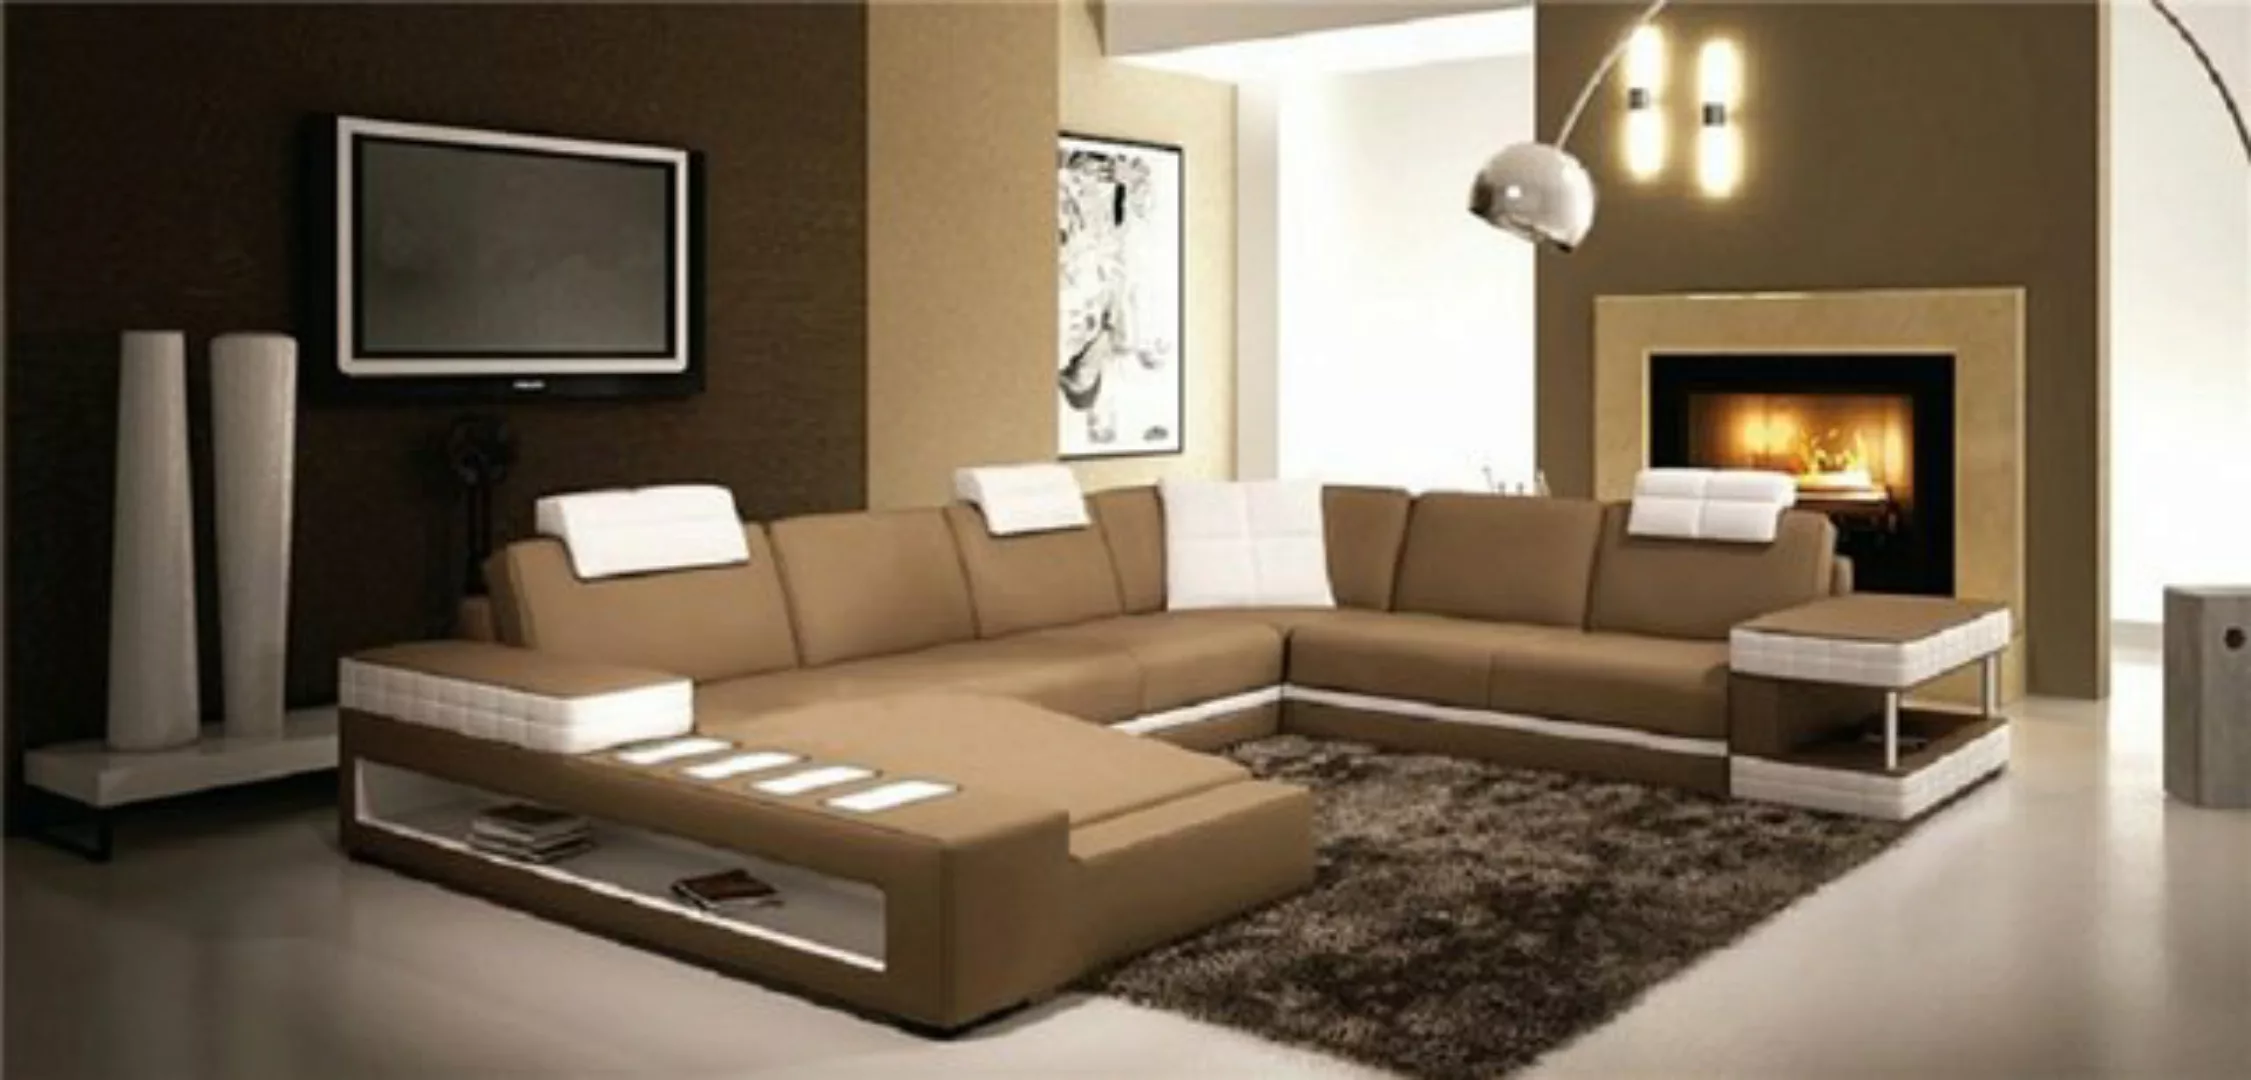 JVmoebel Ecksofa U Form Sofa Couch Polster Wohnlandschaft Design Luxus Ecks günstig online kaufen